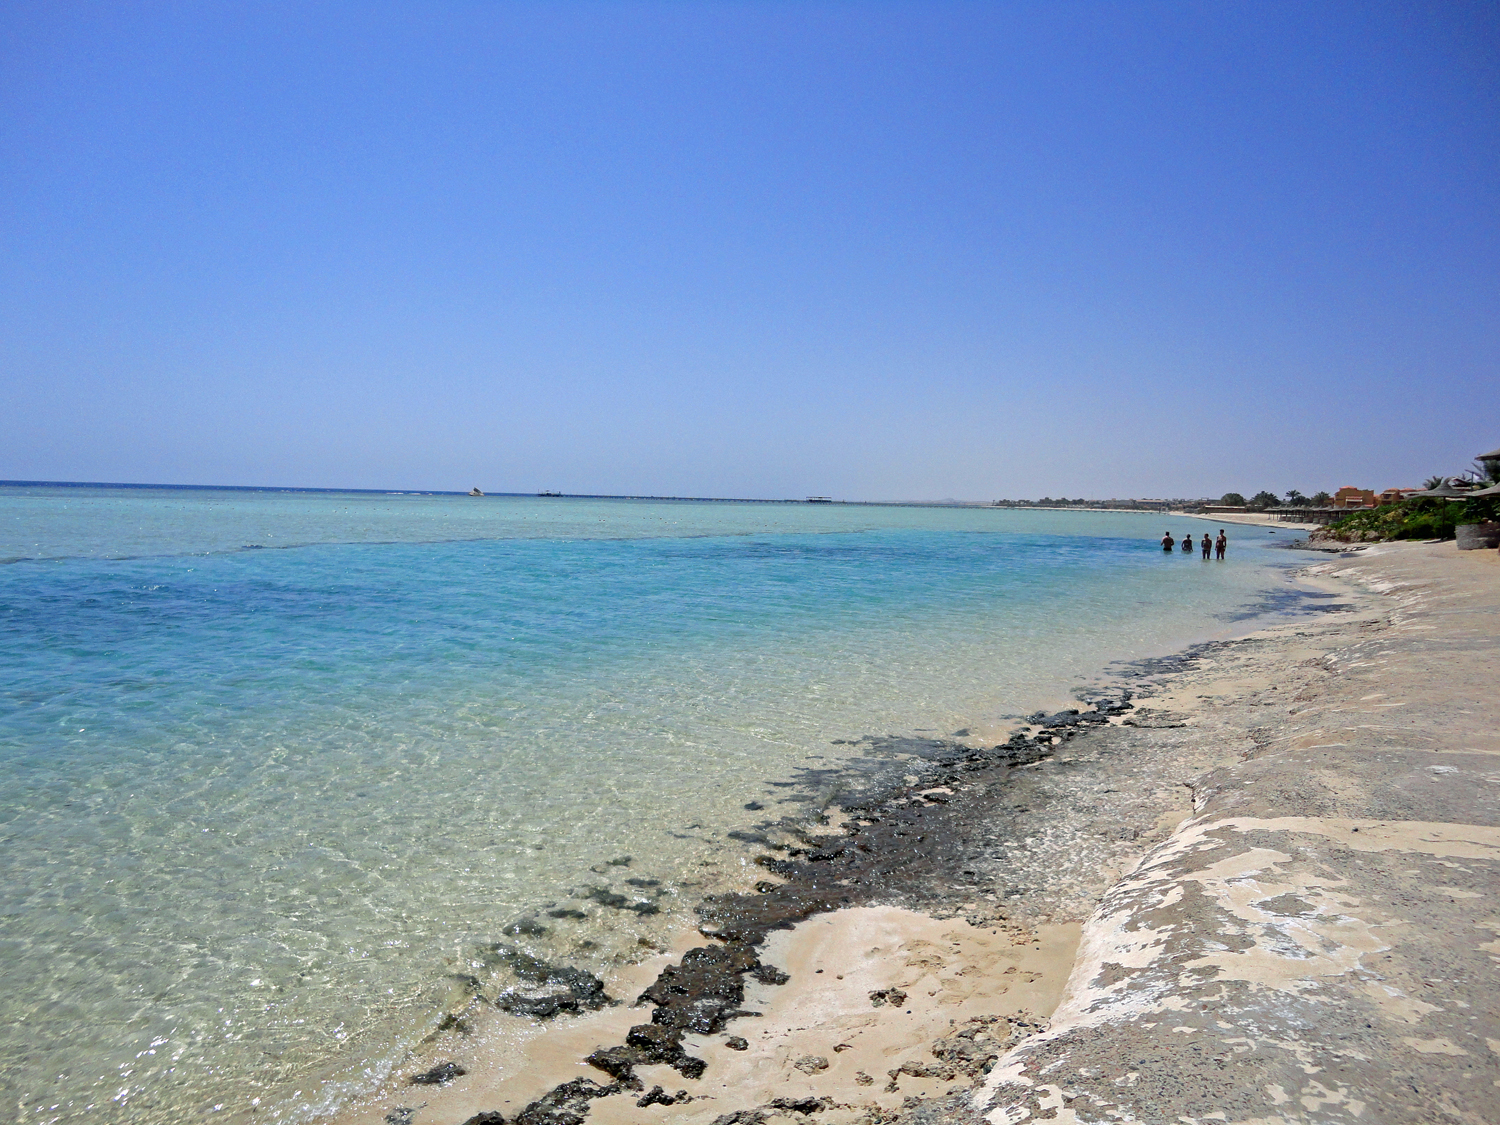 Fotografie cu Blue Reef Resort cu o suprafață de nisip strălucitor